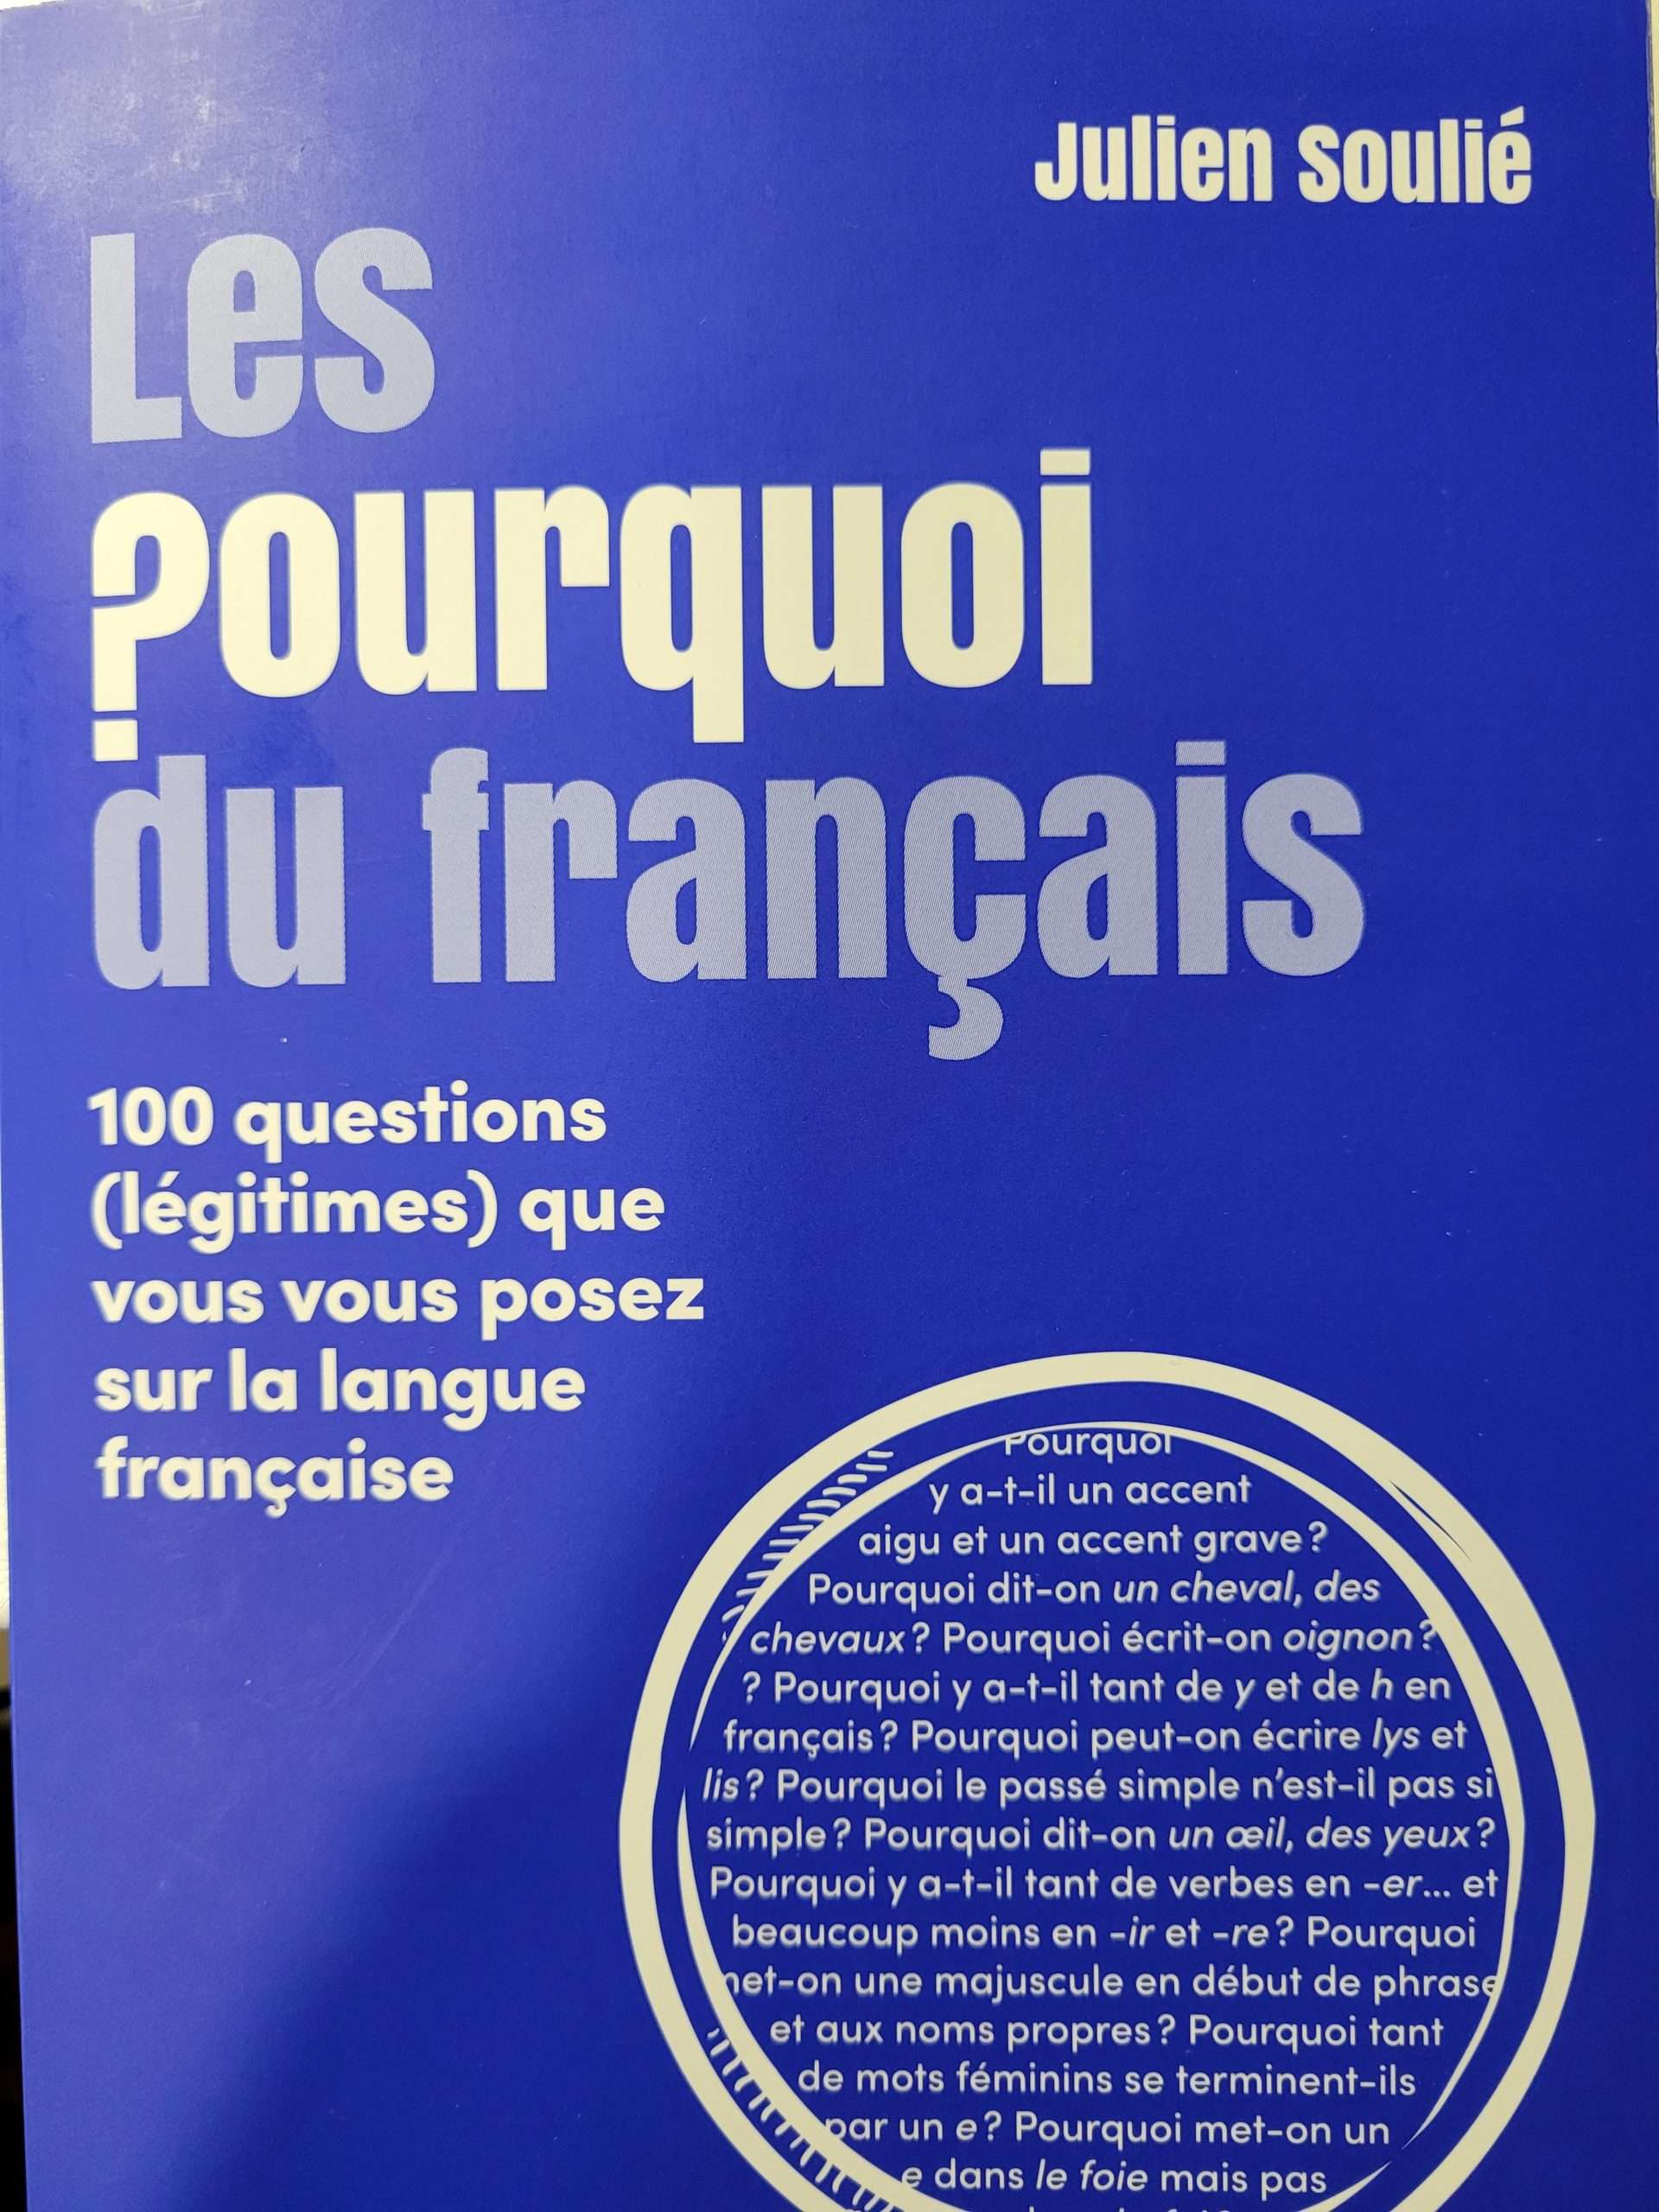 Questions langue française